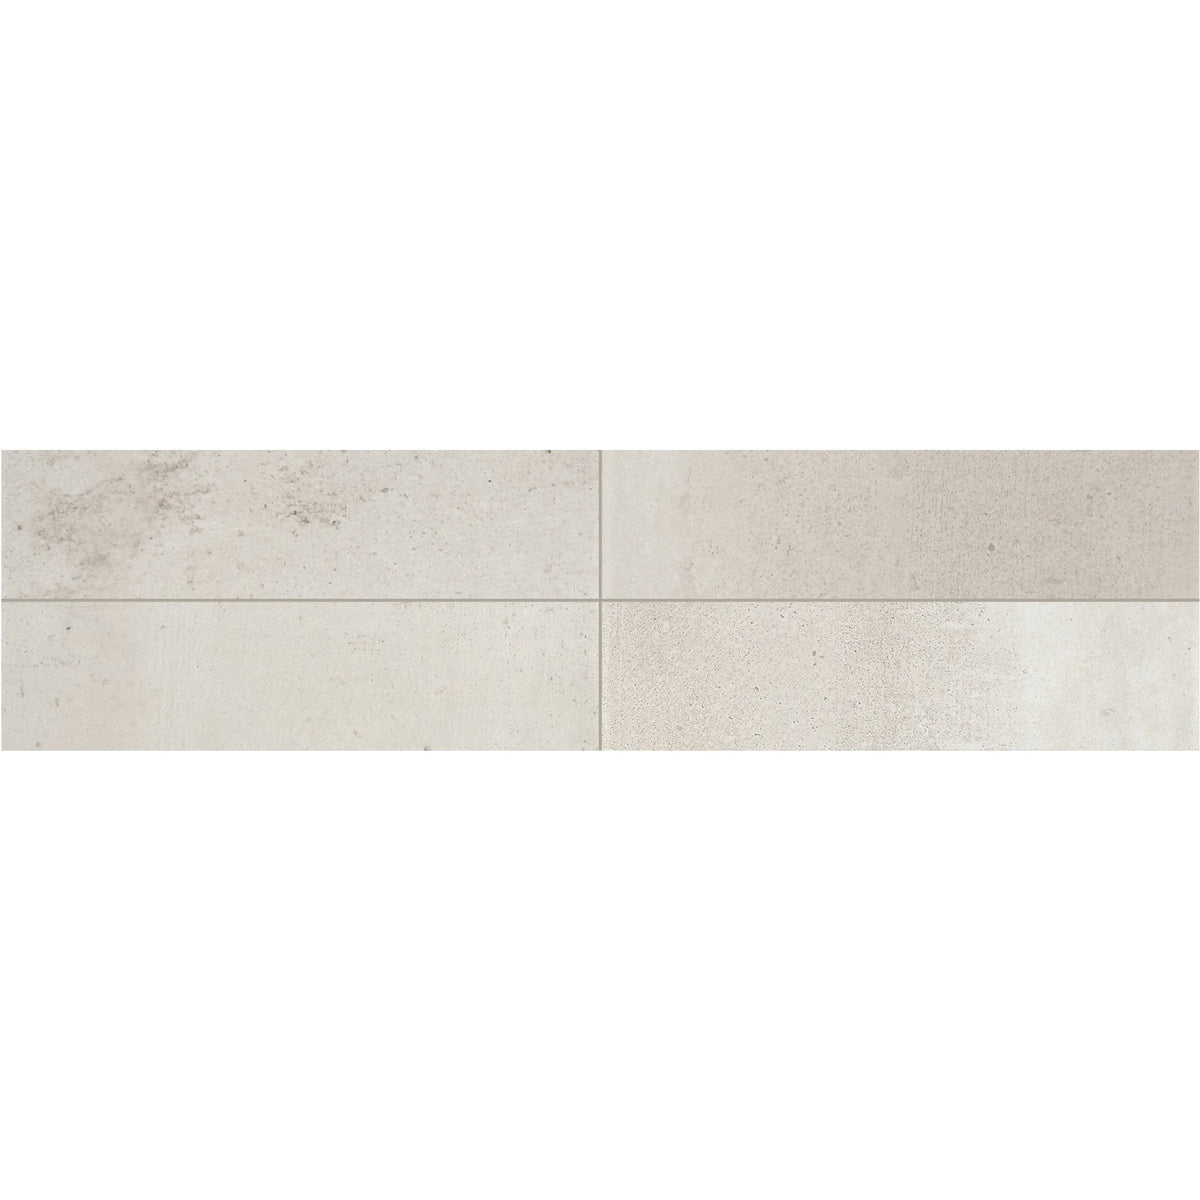 Daltile - Modern Hearth - 3 in. x 12 in. Glazed Ceramic Wall Tile - White Ash